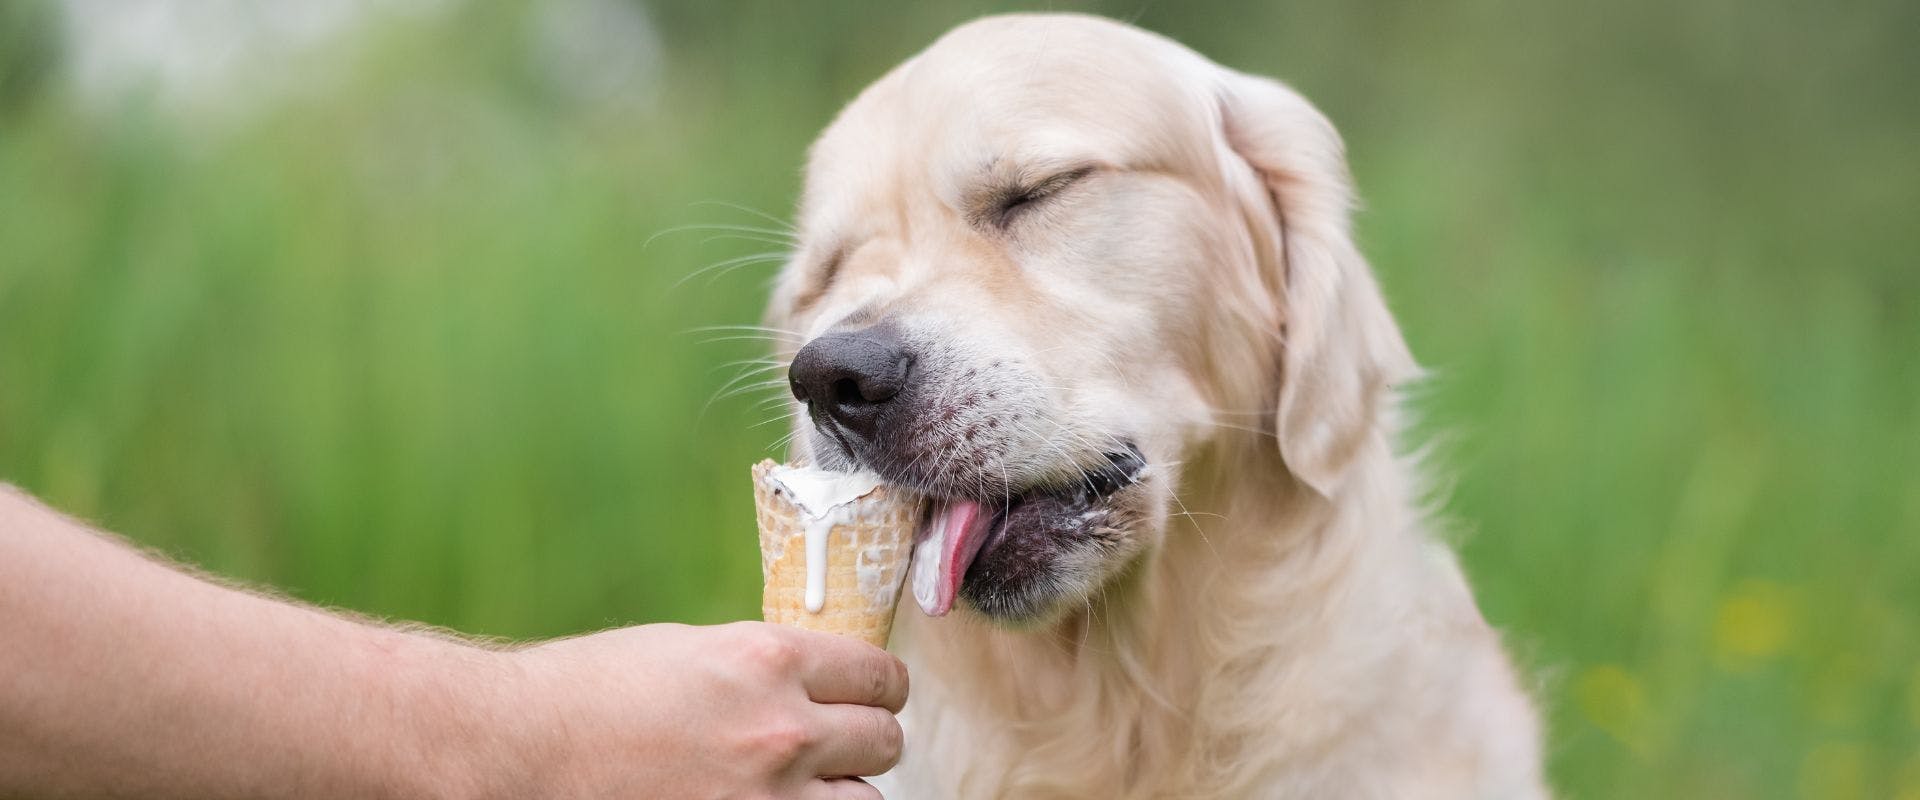 Golden Retriever eating an ice cream